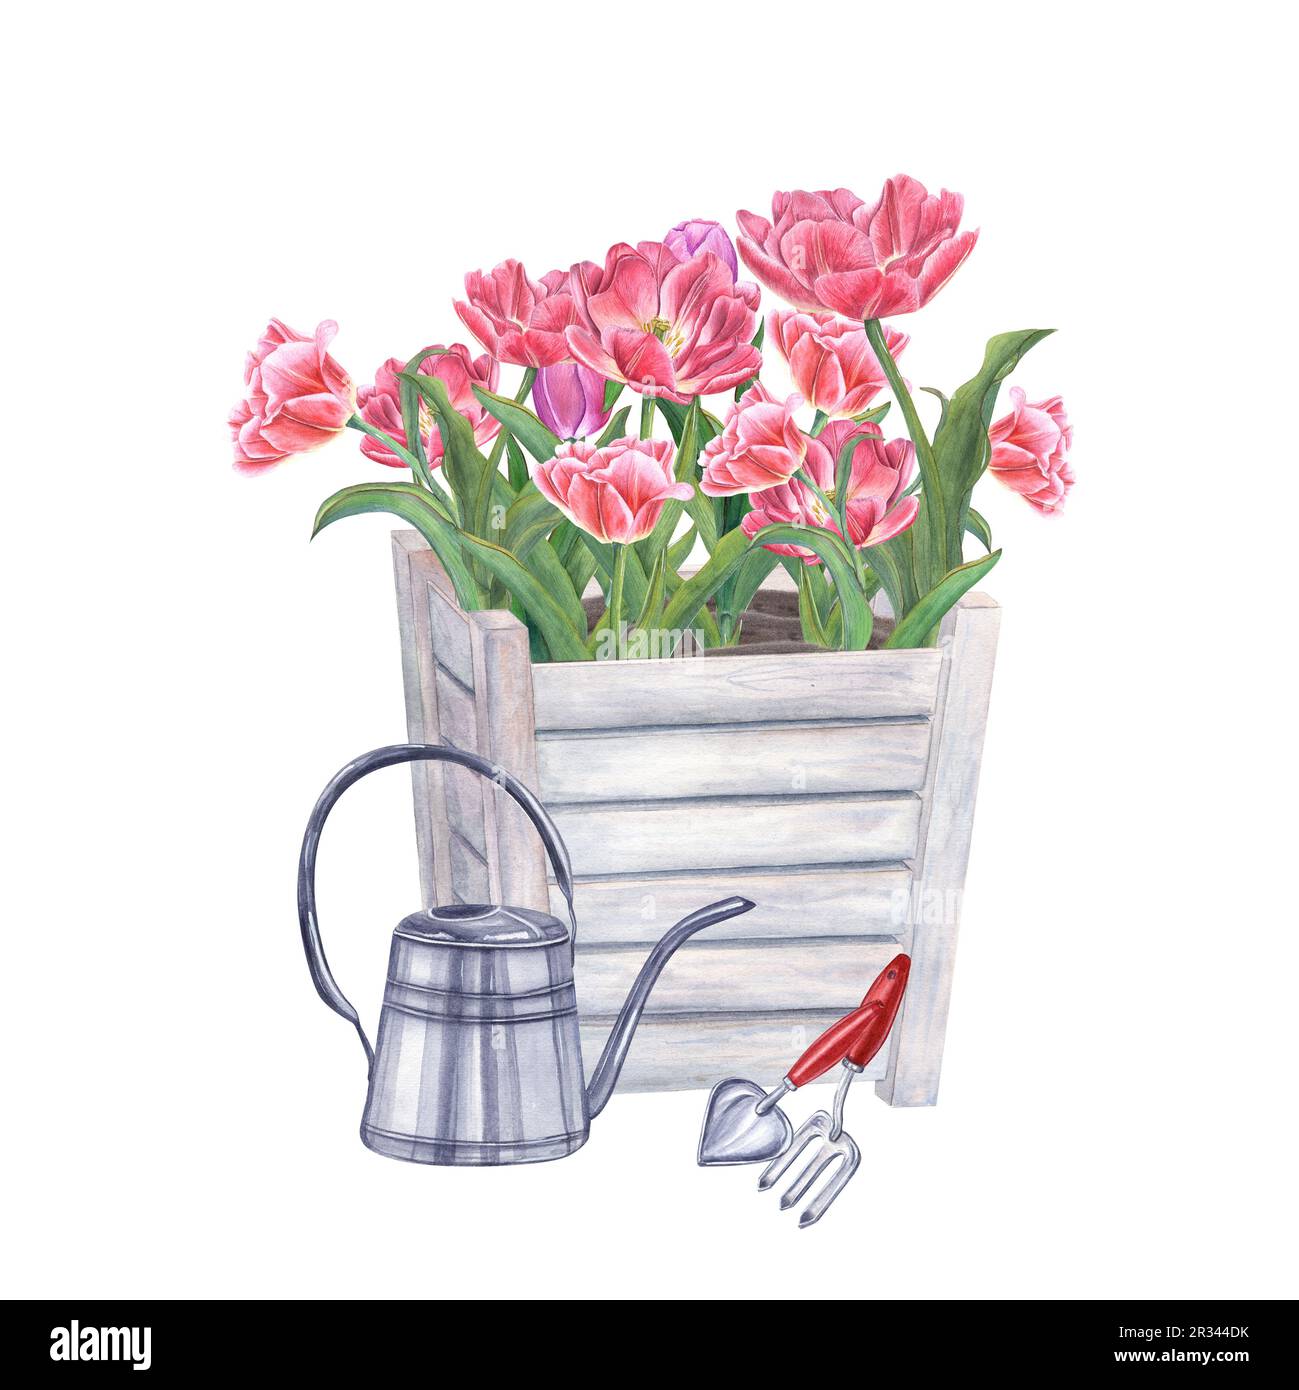 Pinkfarbene doppelte Tulpen in Holzblumentöpfen, Gießkanne und Gartengeräten isoliert auf weißem Hintergrund. Aquarelle Darstellung von Frühlingsblumen Stockfoto